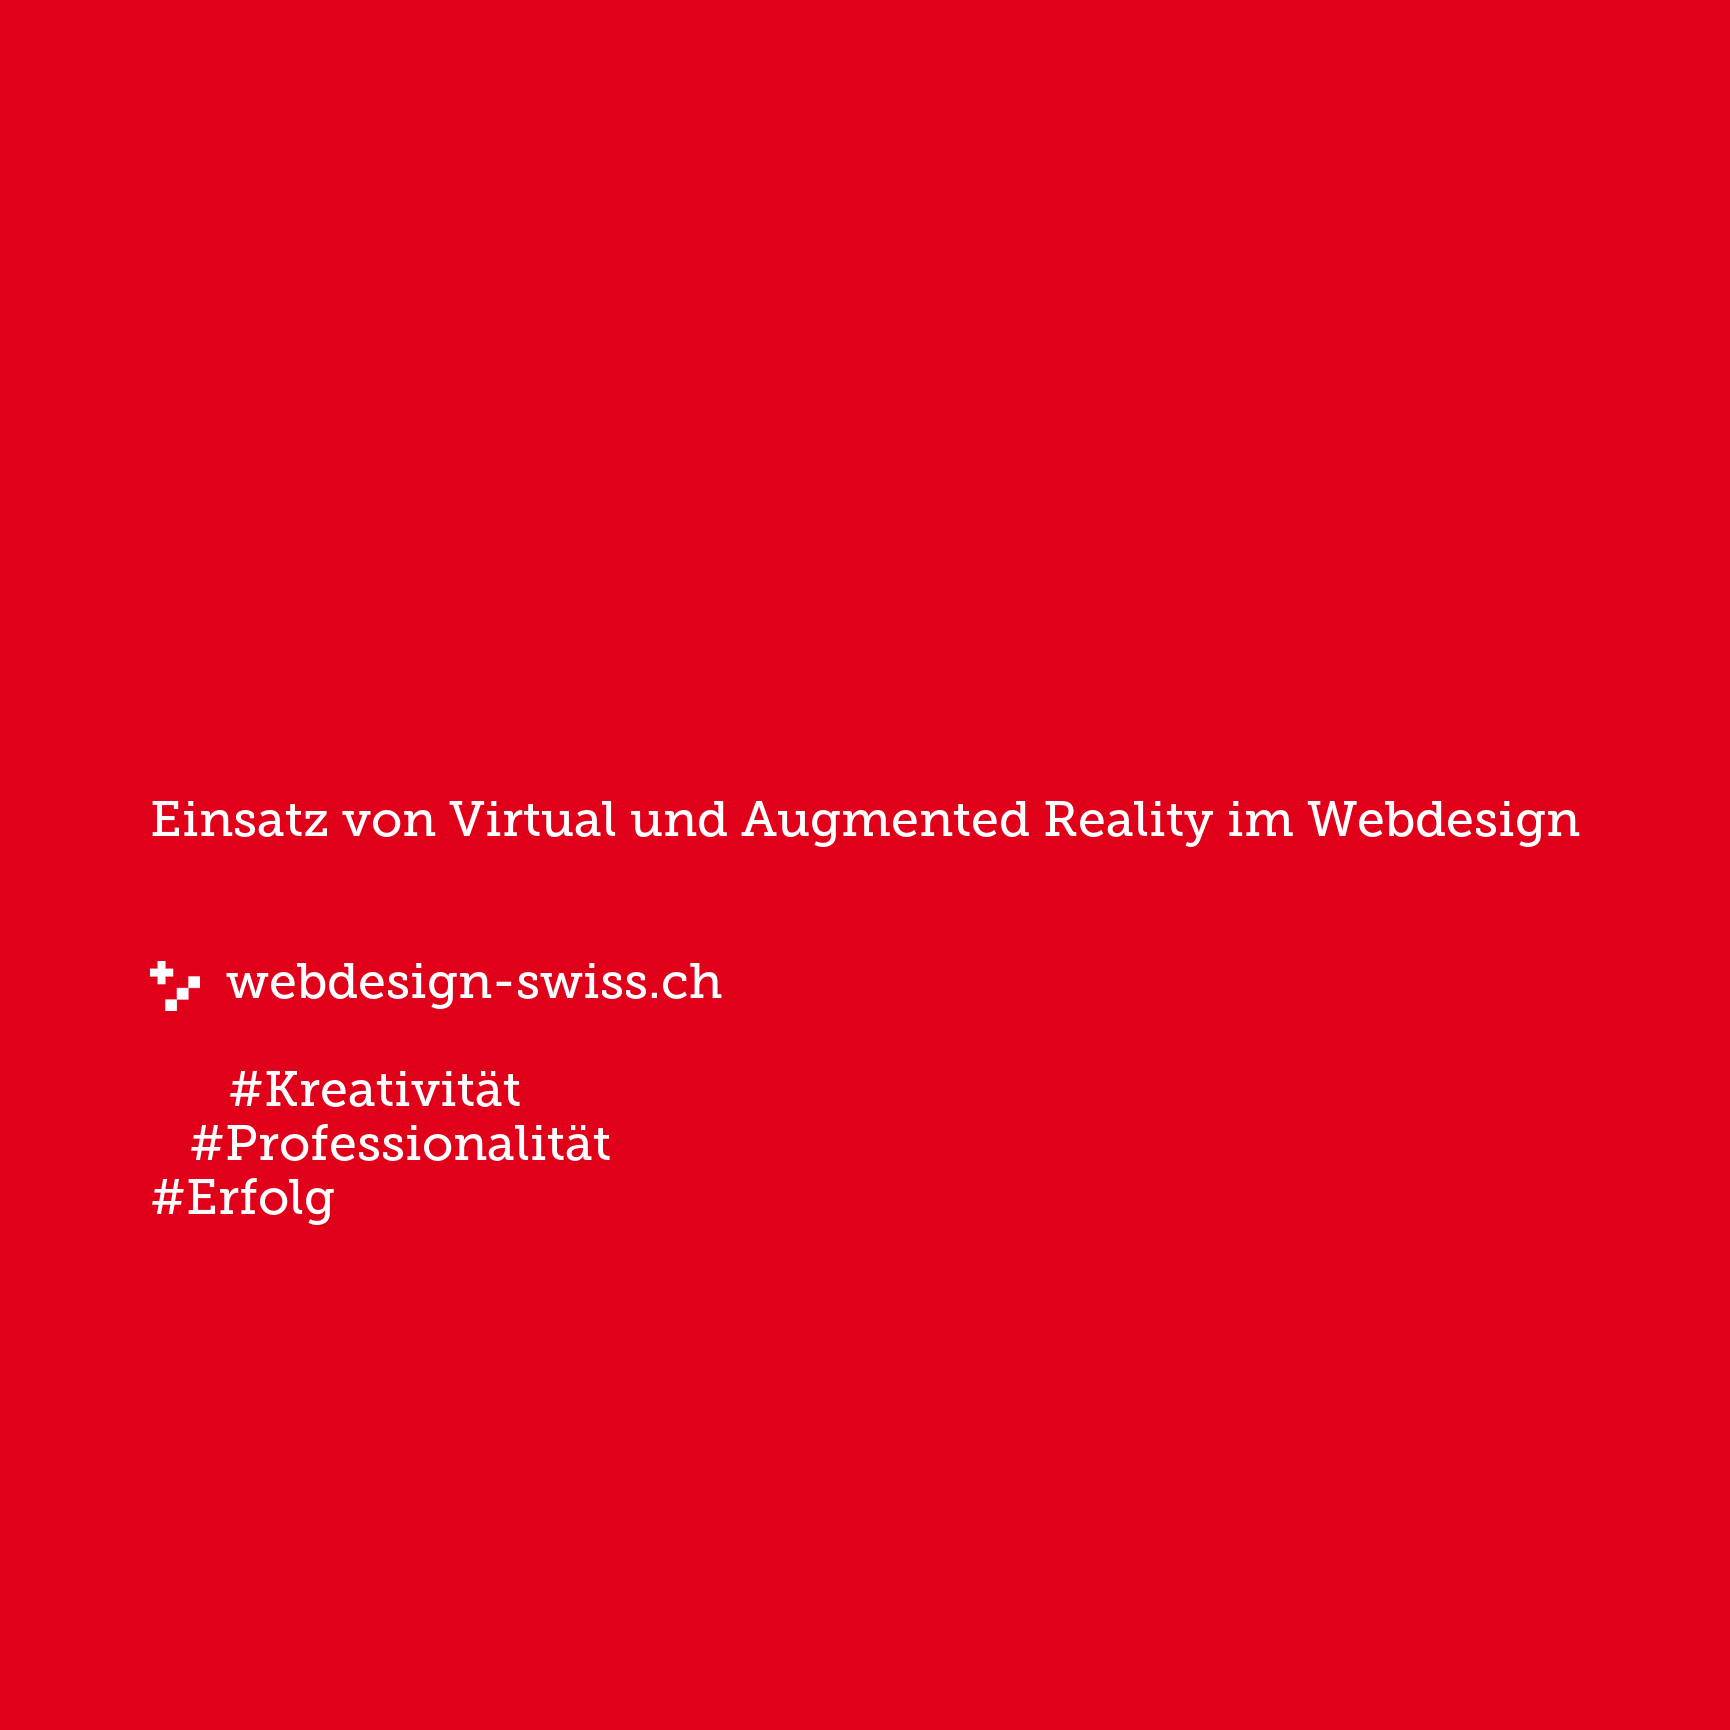 Einsatz von Virtual und Augmented Reality im Webdesign